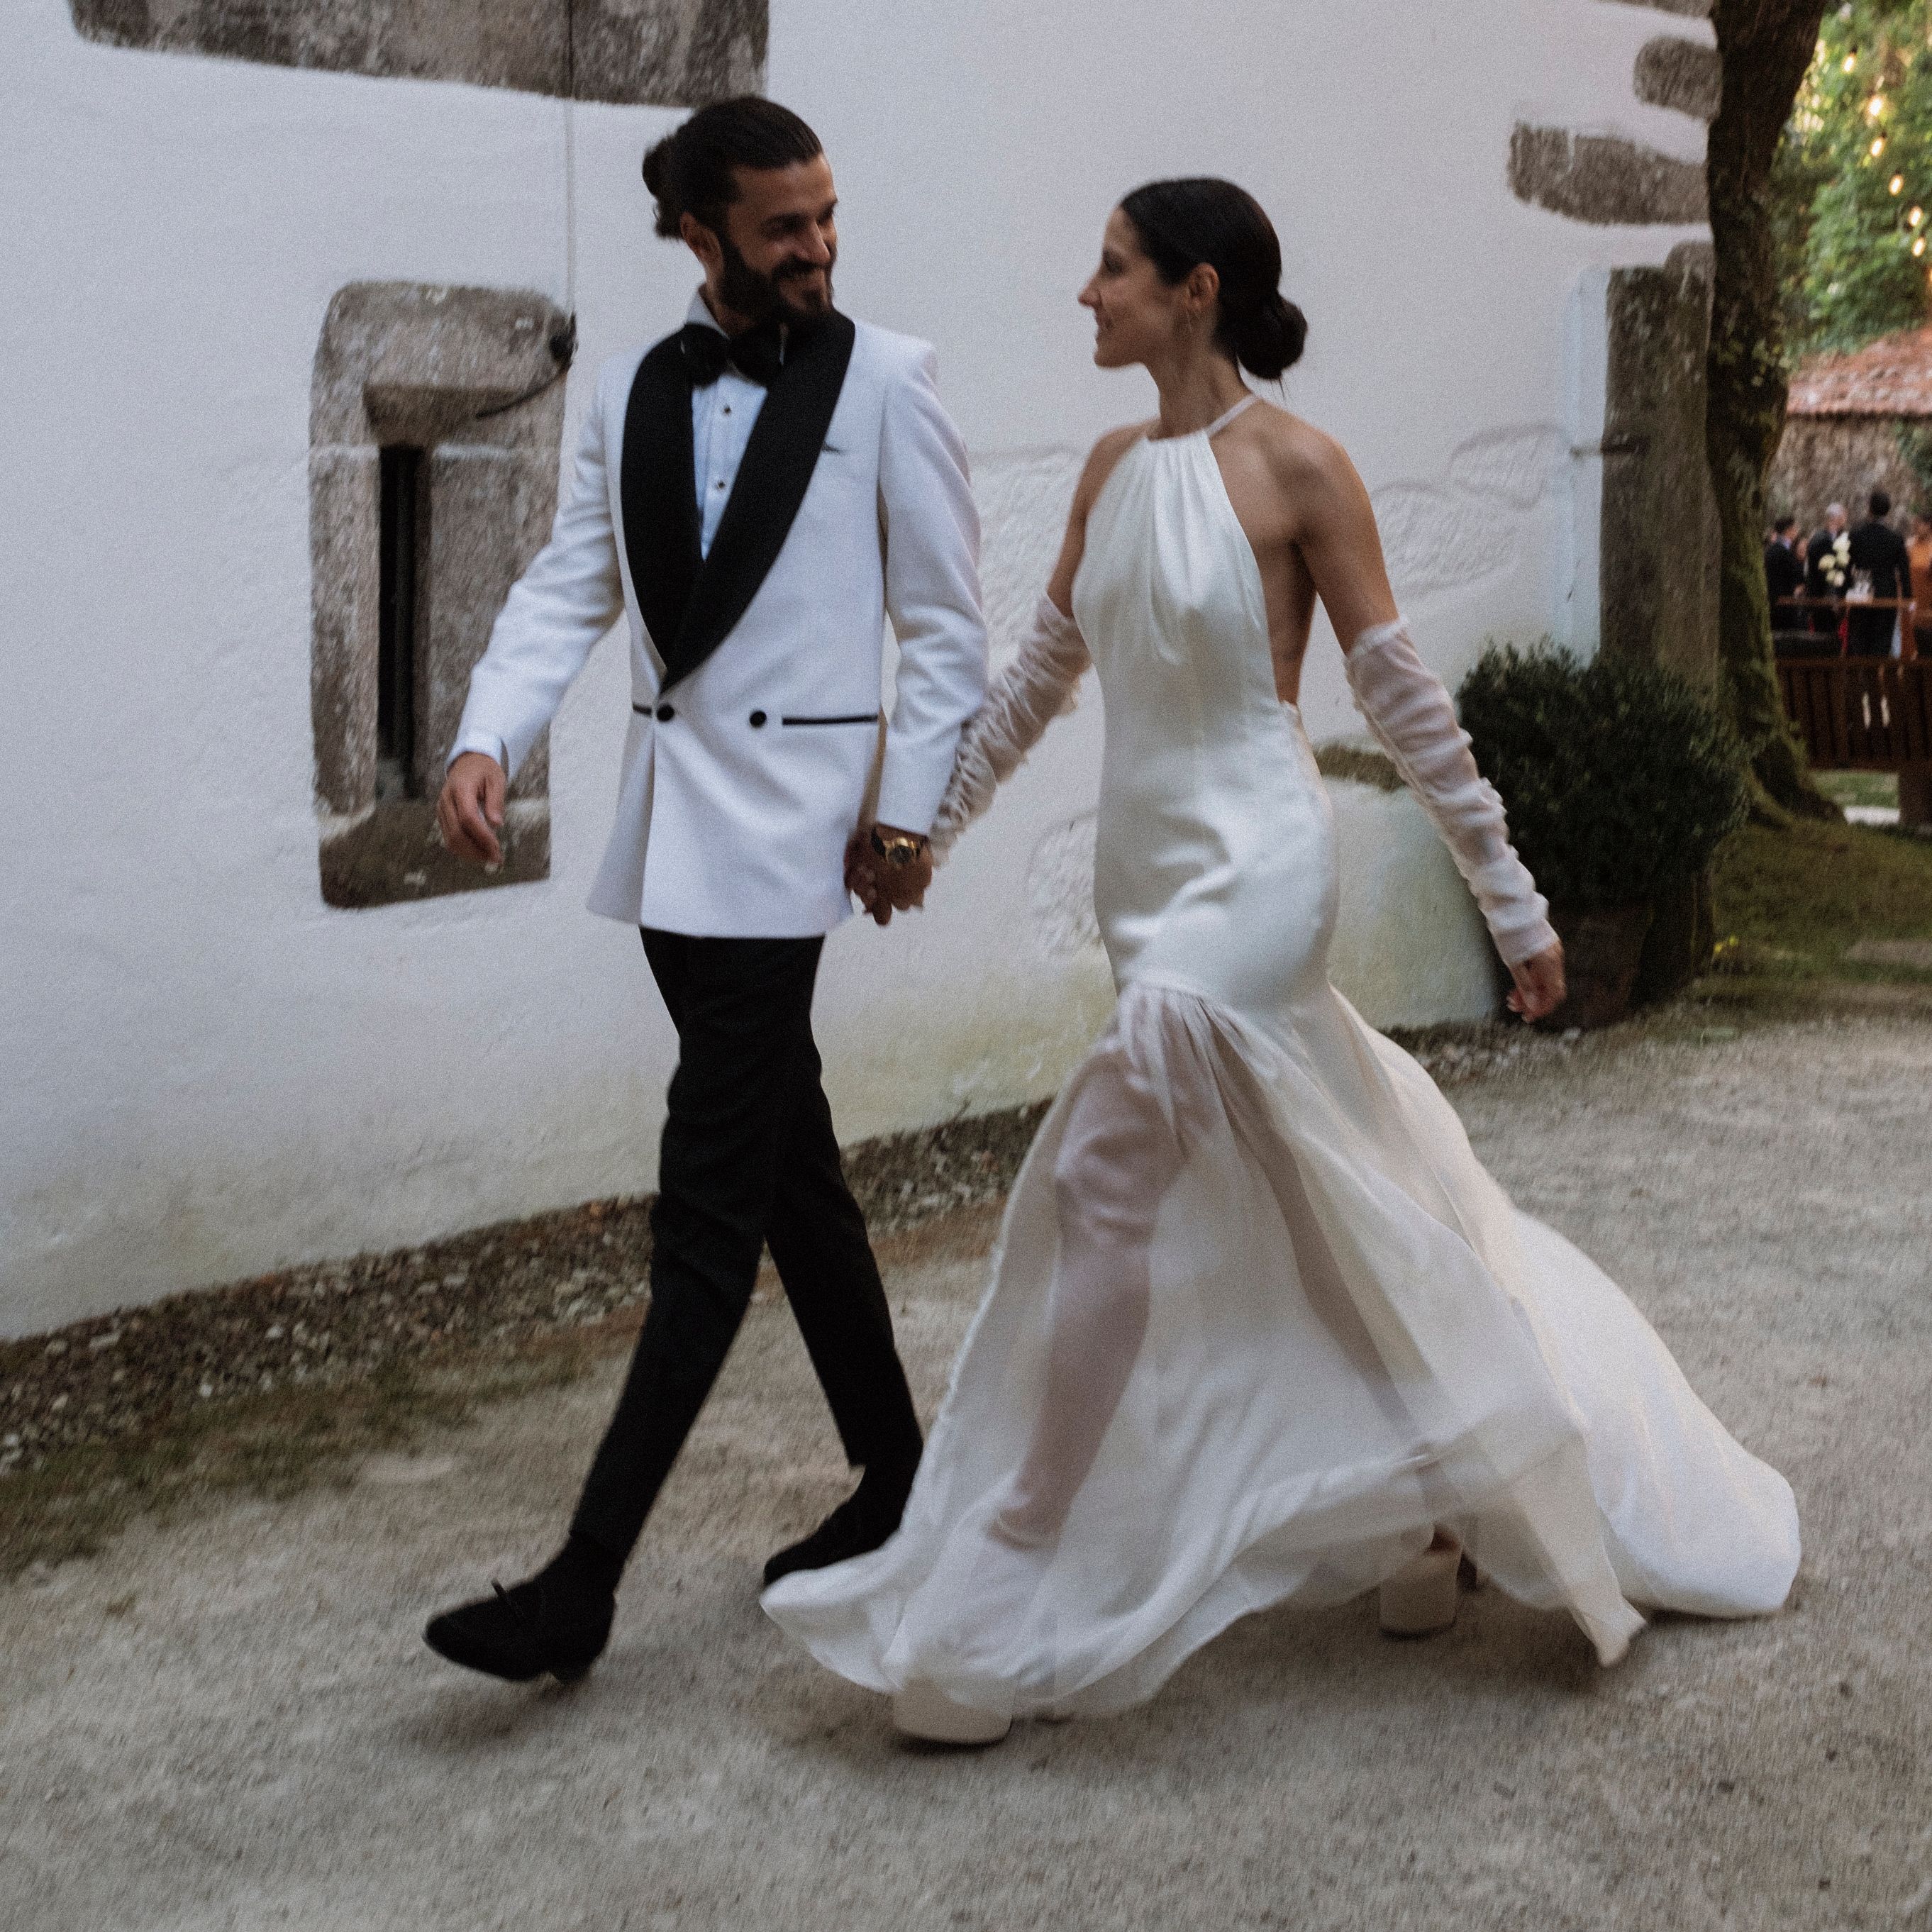 La novia española de más bonitos para boda civil